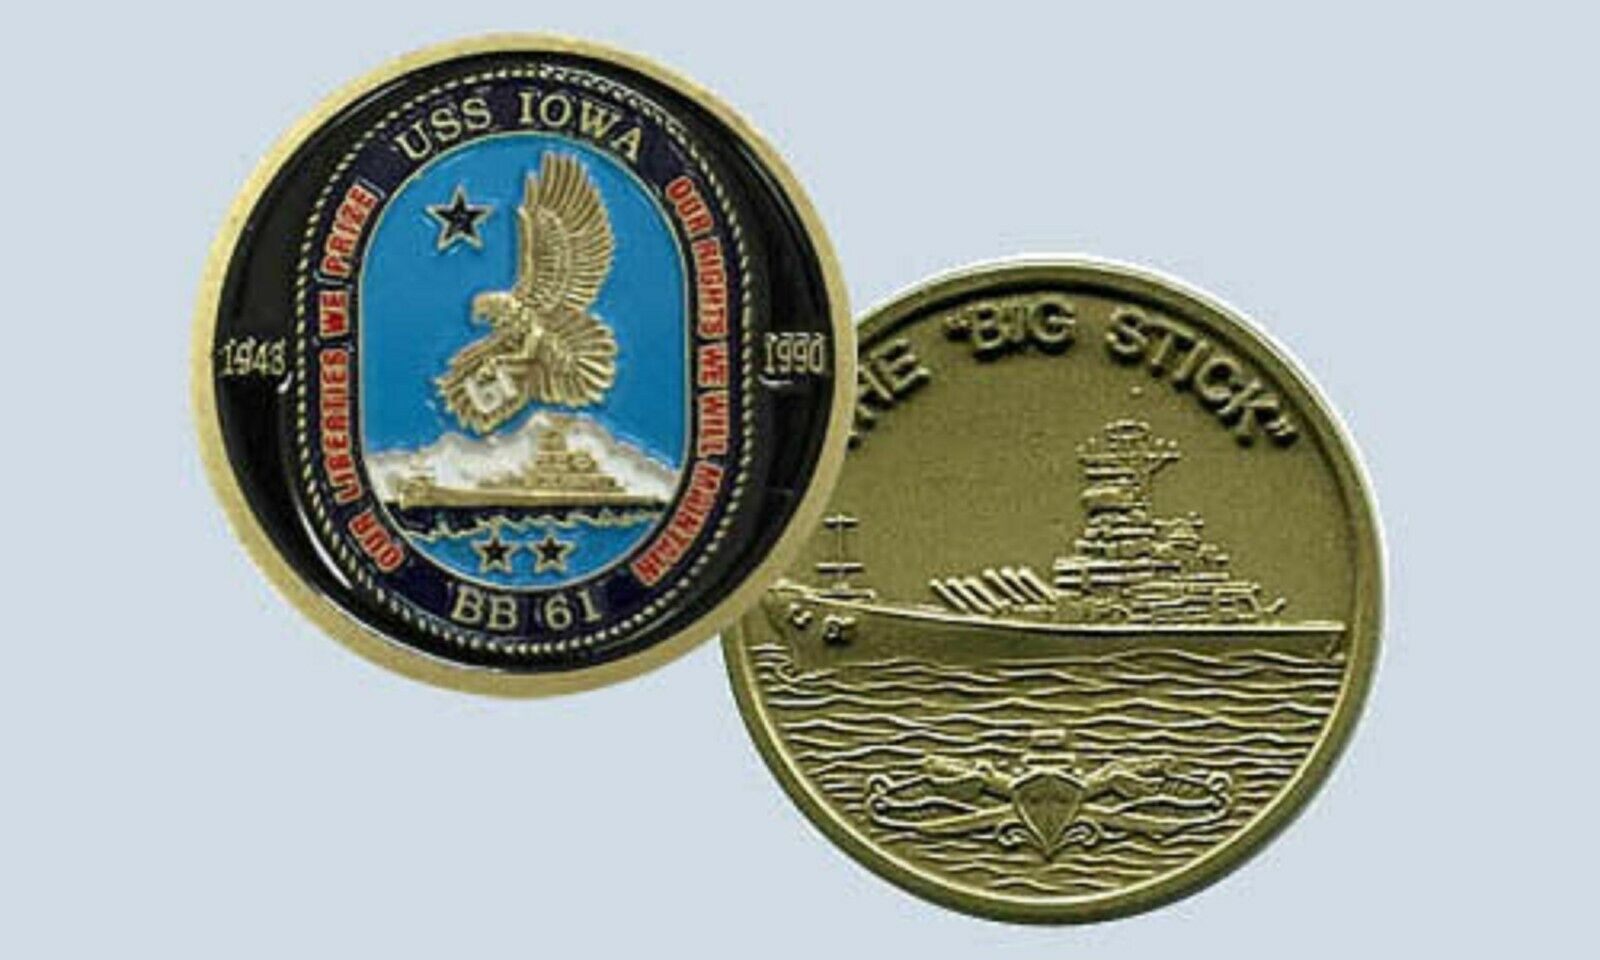 NAVY BATTLESHIP USS IOWA BB-61 THE BIG STICK CHALLENGE COIN